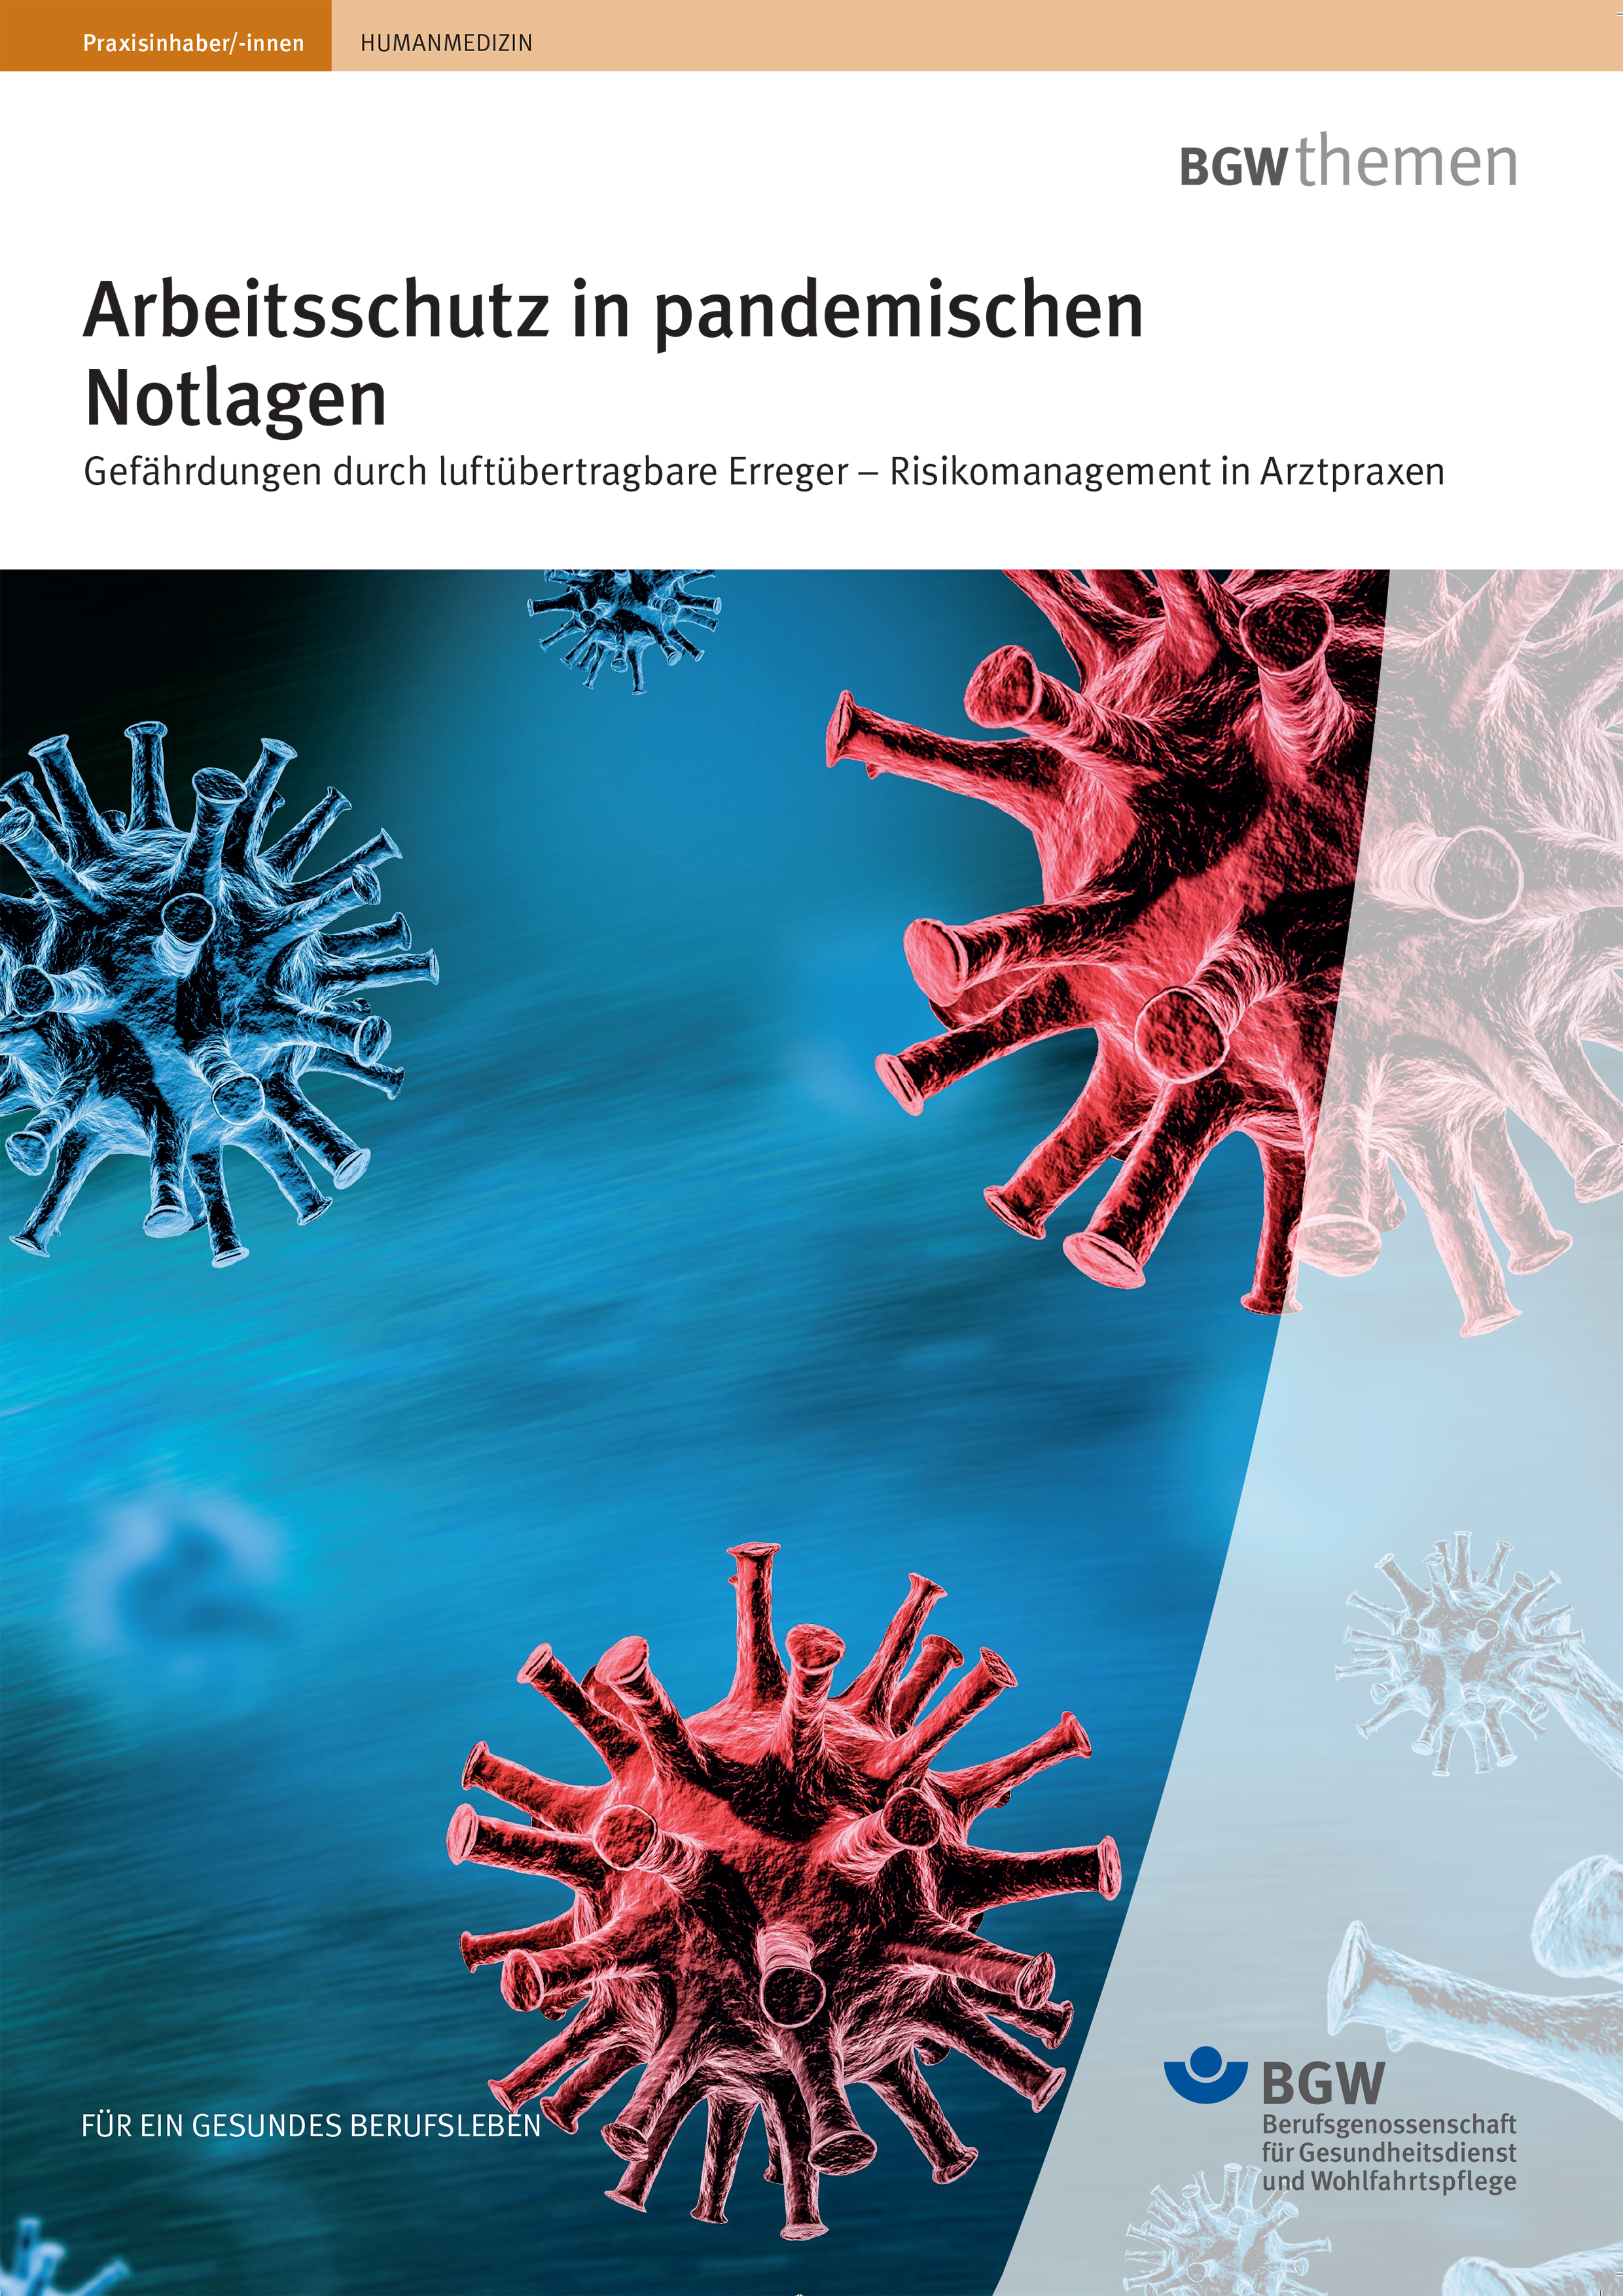 Titelseite der Broschüre "Arbeitsschutz in pandemischen Notlagen" 